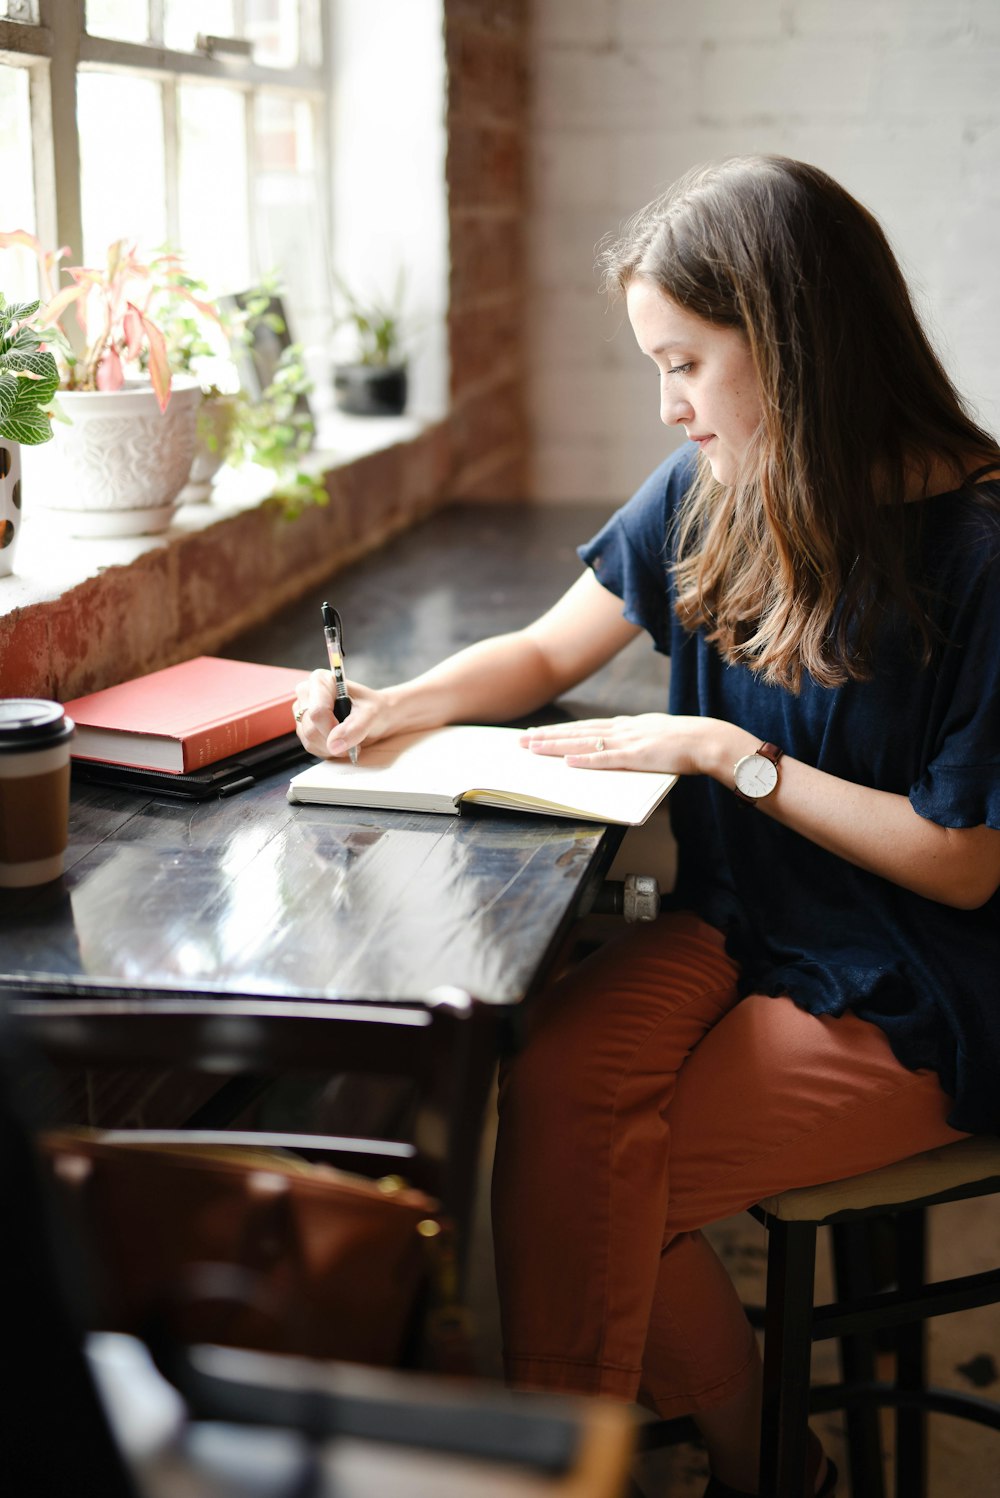 창 근처에 흰색 책에 쓰는 검은 탁자 앞에 앉아 있는 여자